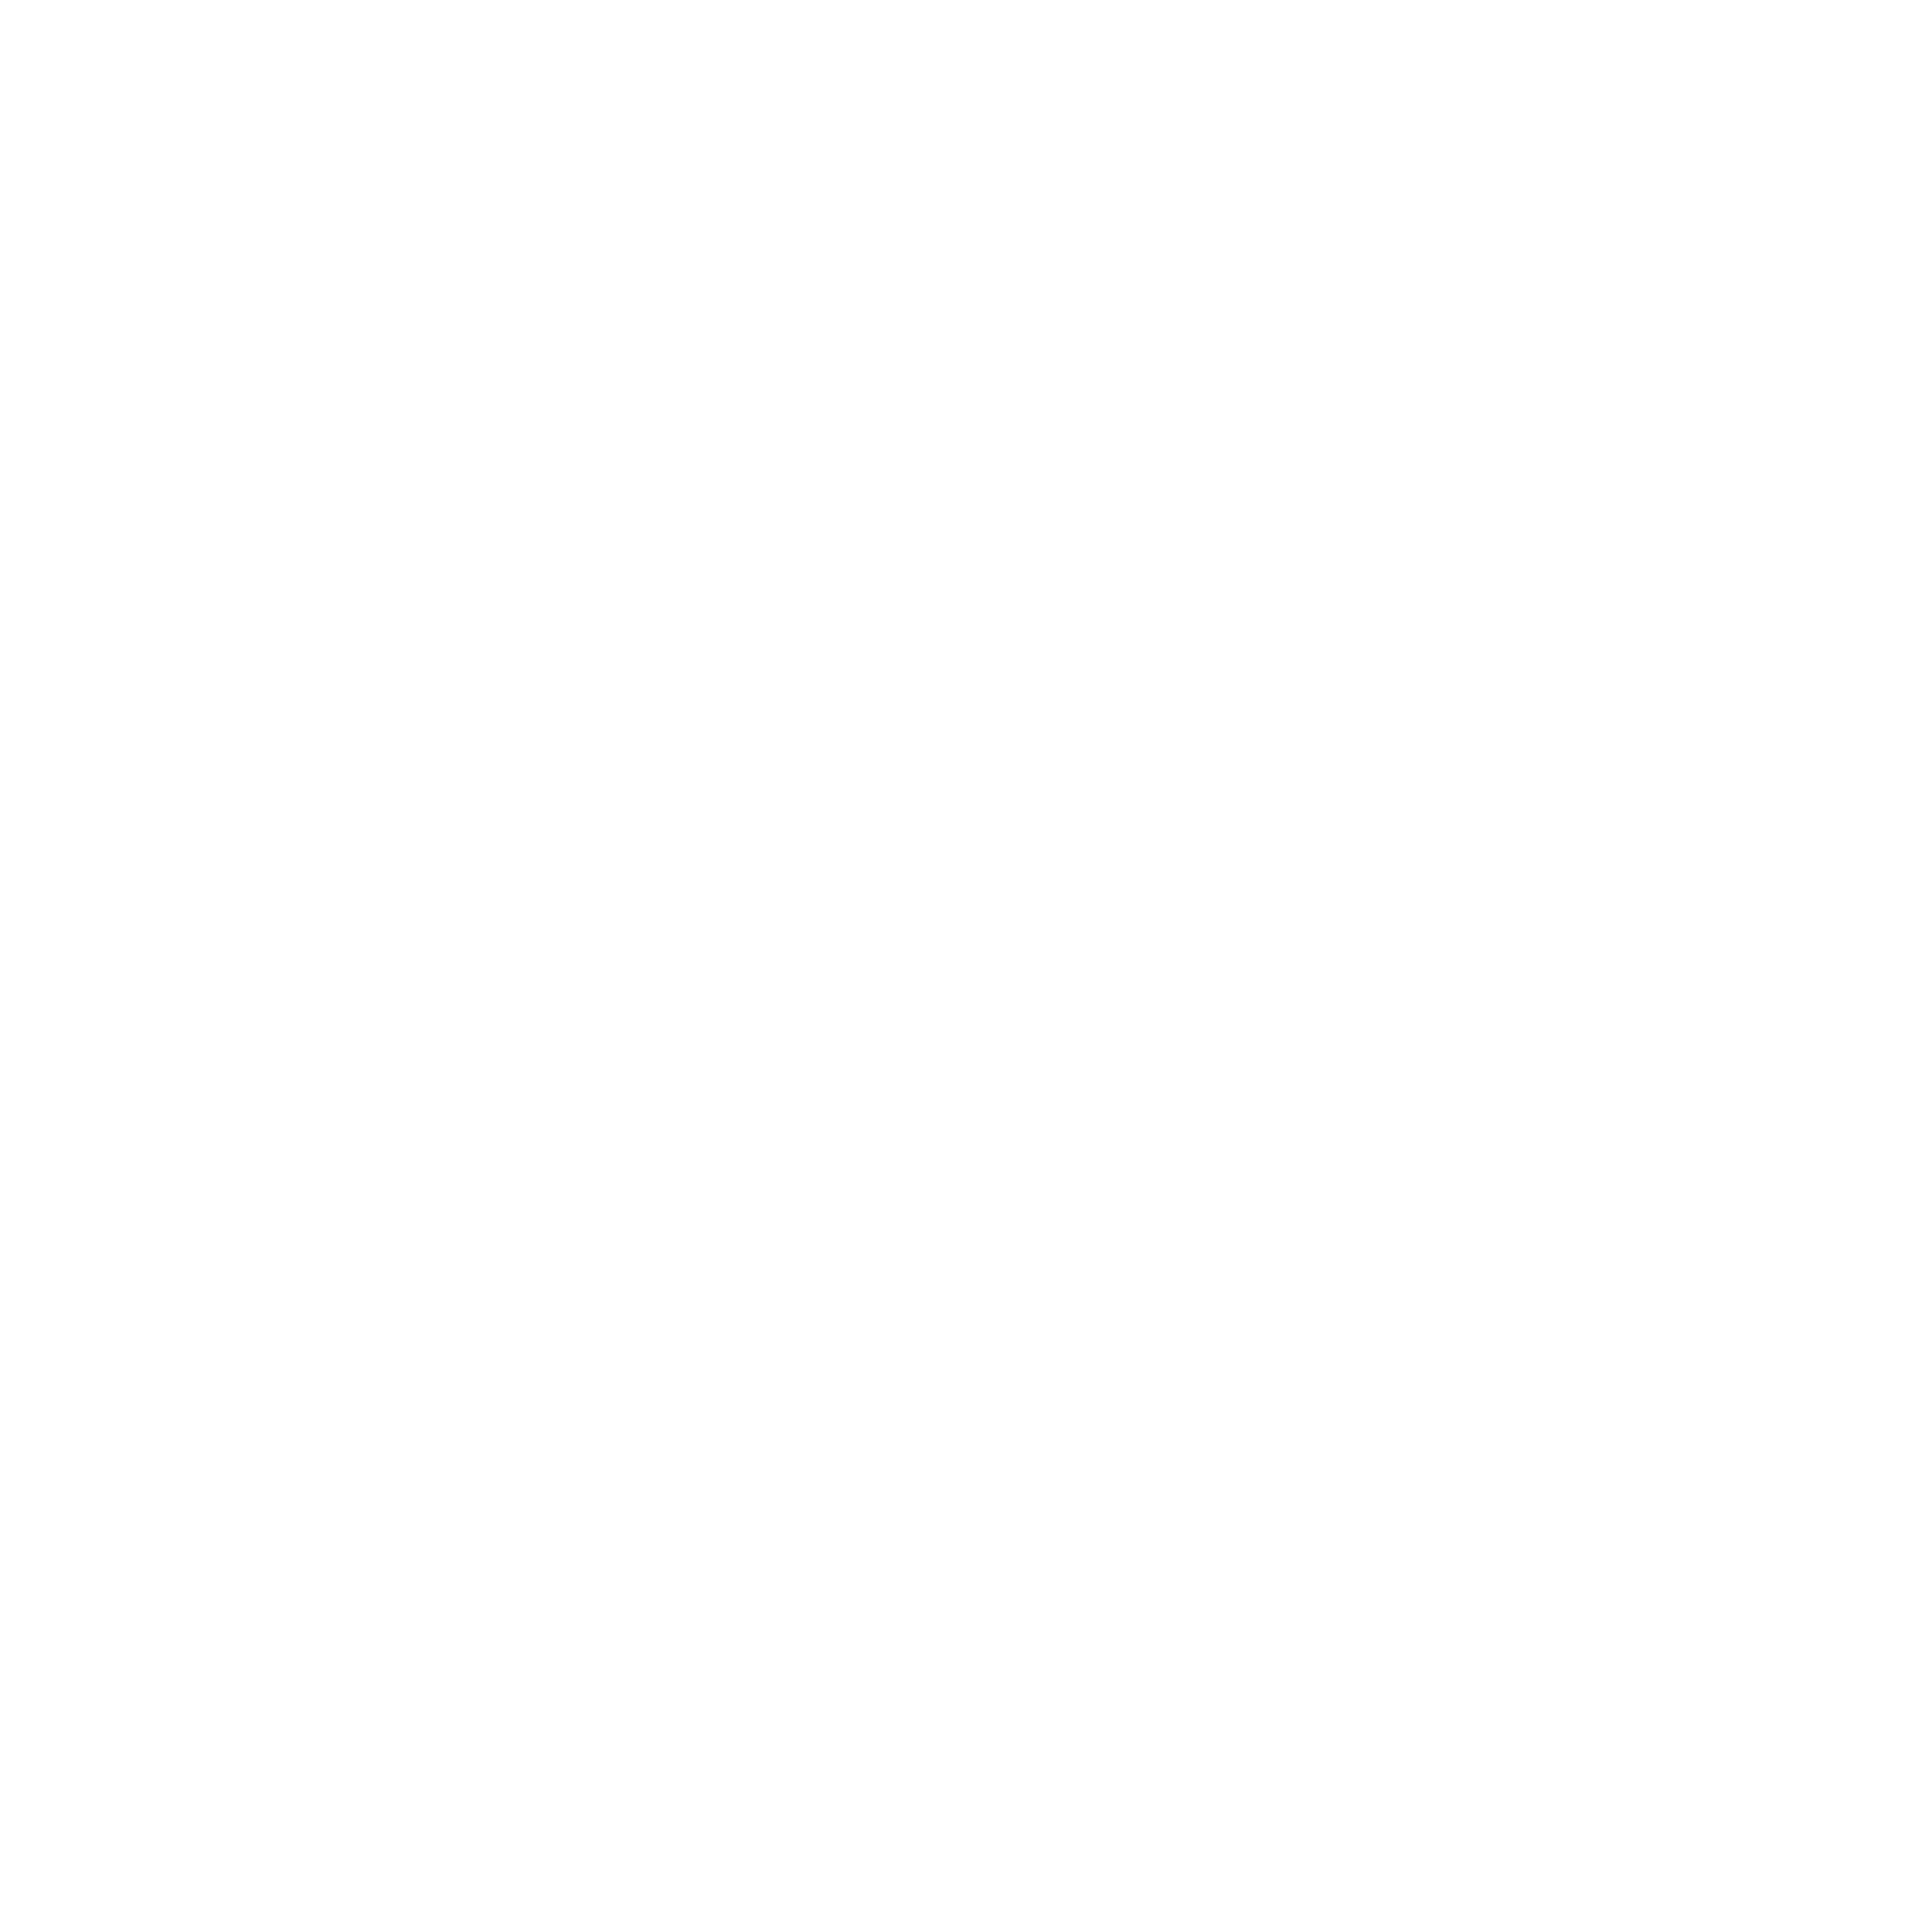 Liliana de Cartagena | GetYourGuide-aanbieder